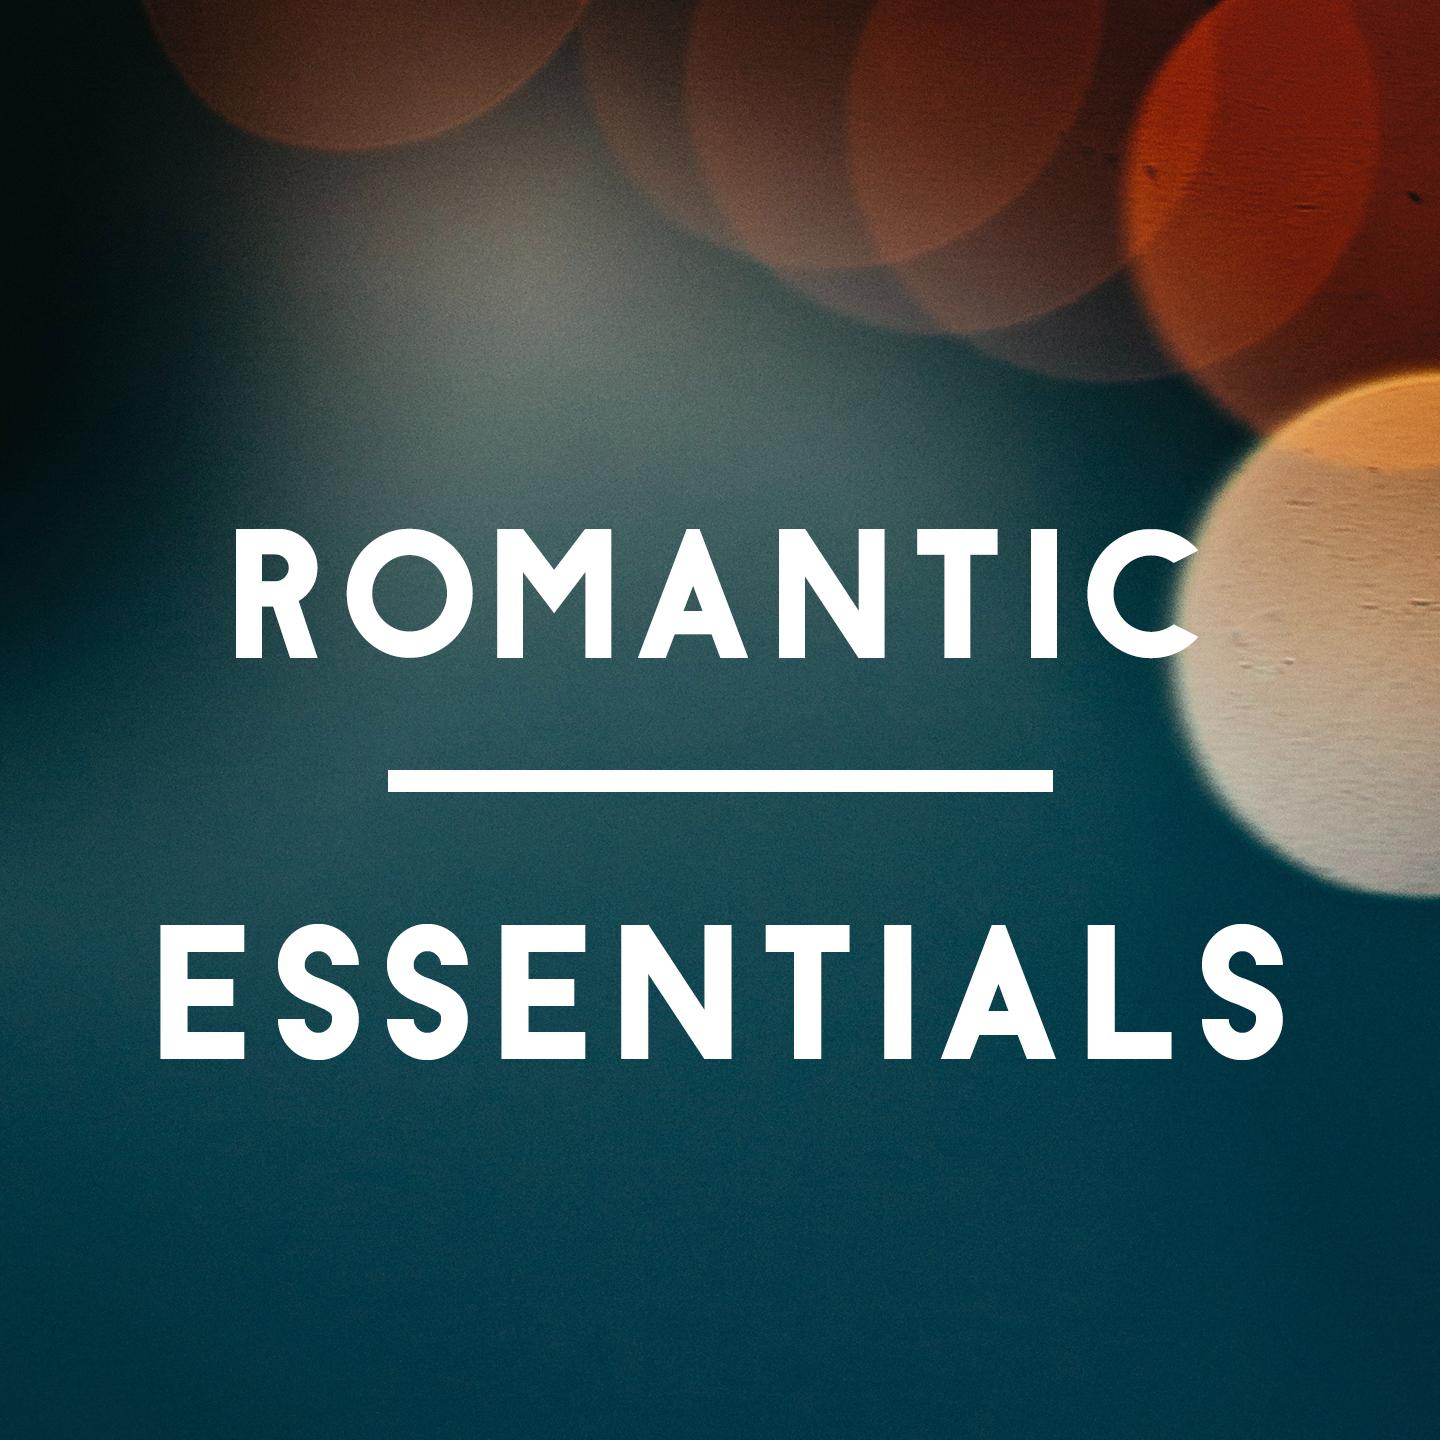 Romantic essentials